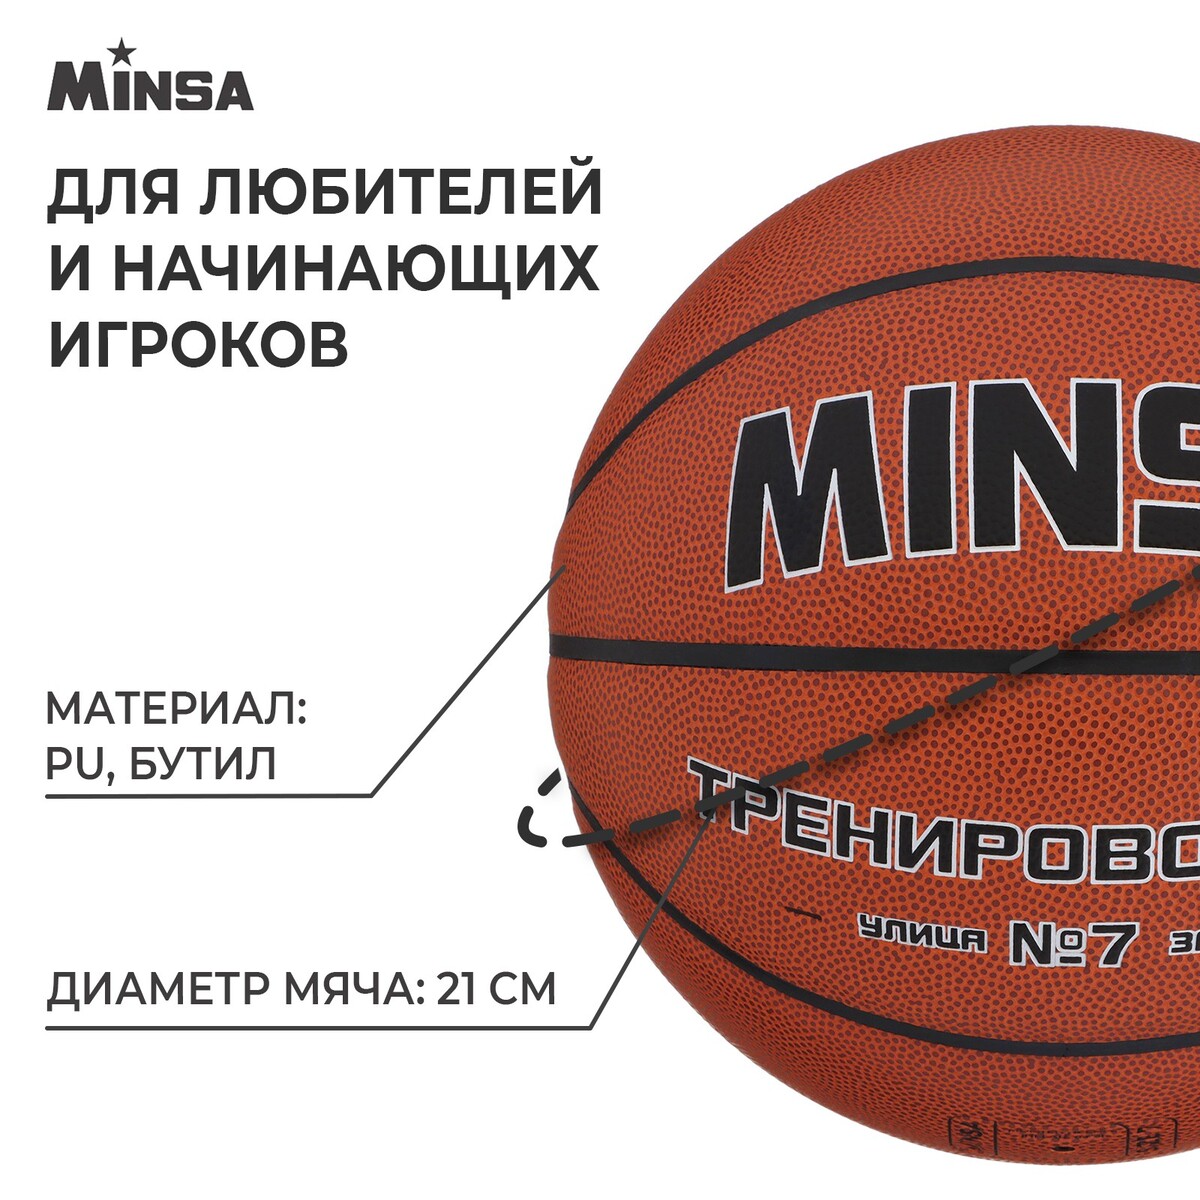 фото Баскетбольный мяч minsa, тренировочный, pu, клееный, 8 панелей, р. 7